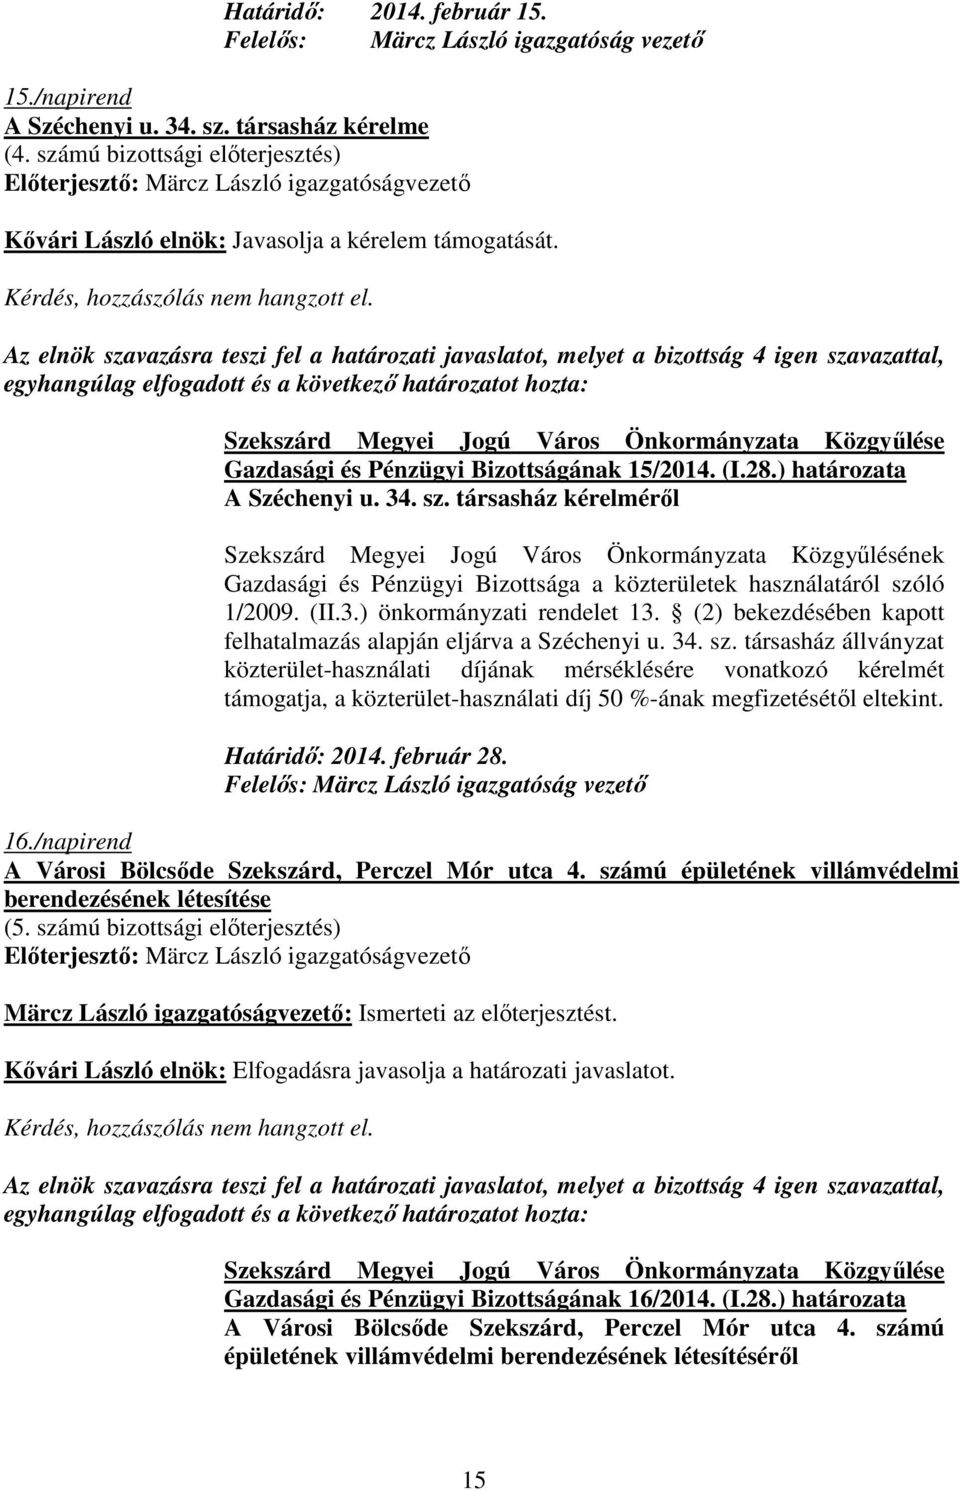 társasház kérelmérıl Gazdasági és Pénzügyi Bizottsága a közterületek használatáról szóló 1/2009. (II.3.) önkormányzati rendelet 13. (2) bekezdésében kapott felhatalmazás alapján eljárva a Széchenyi u.